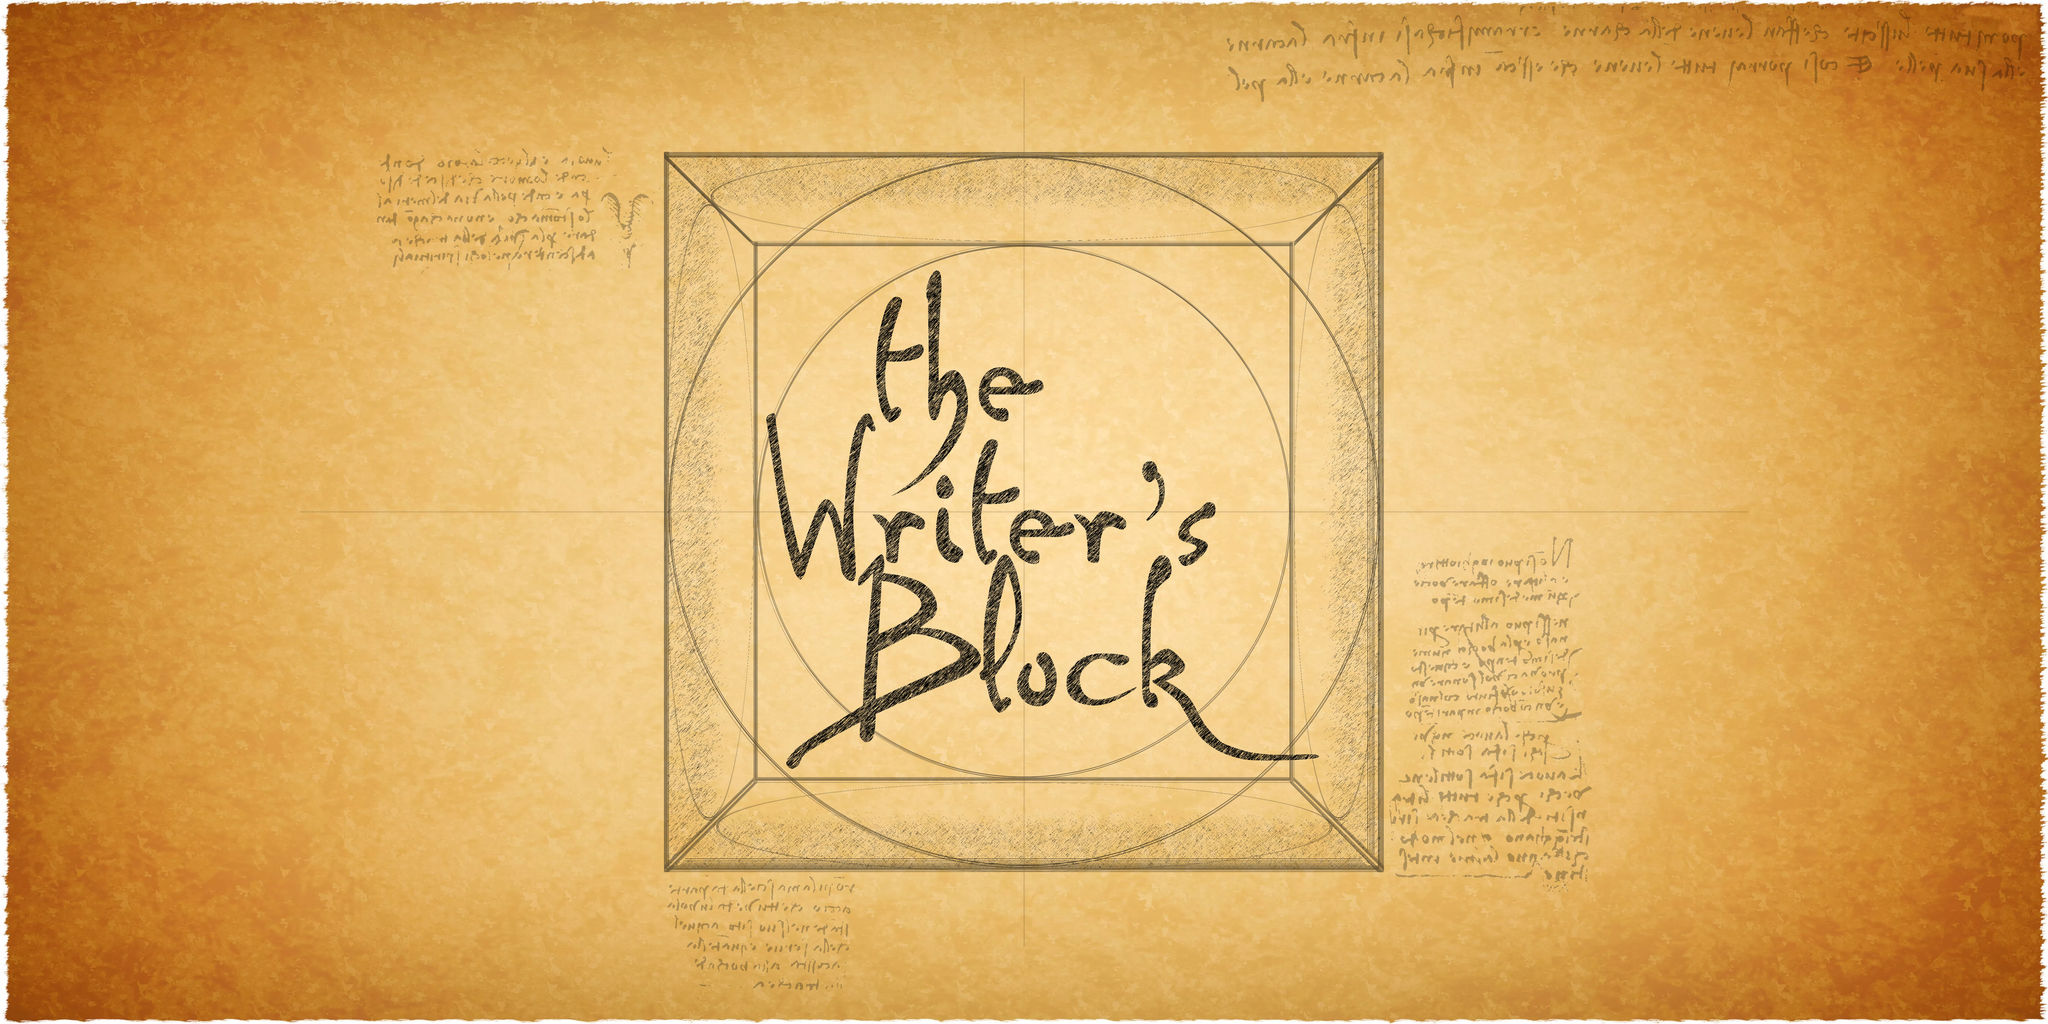 THE WRITER'S BLOCK